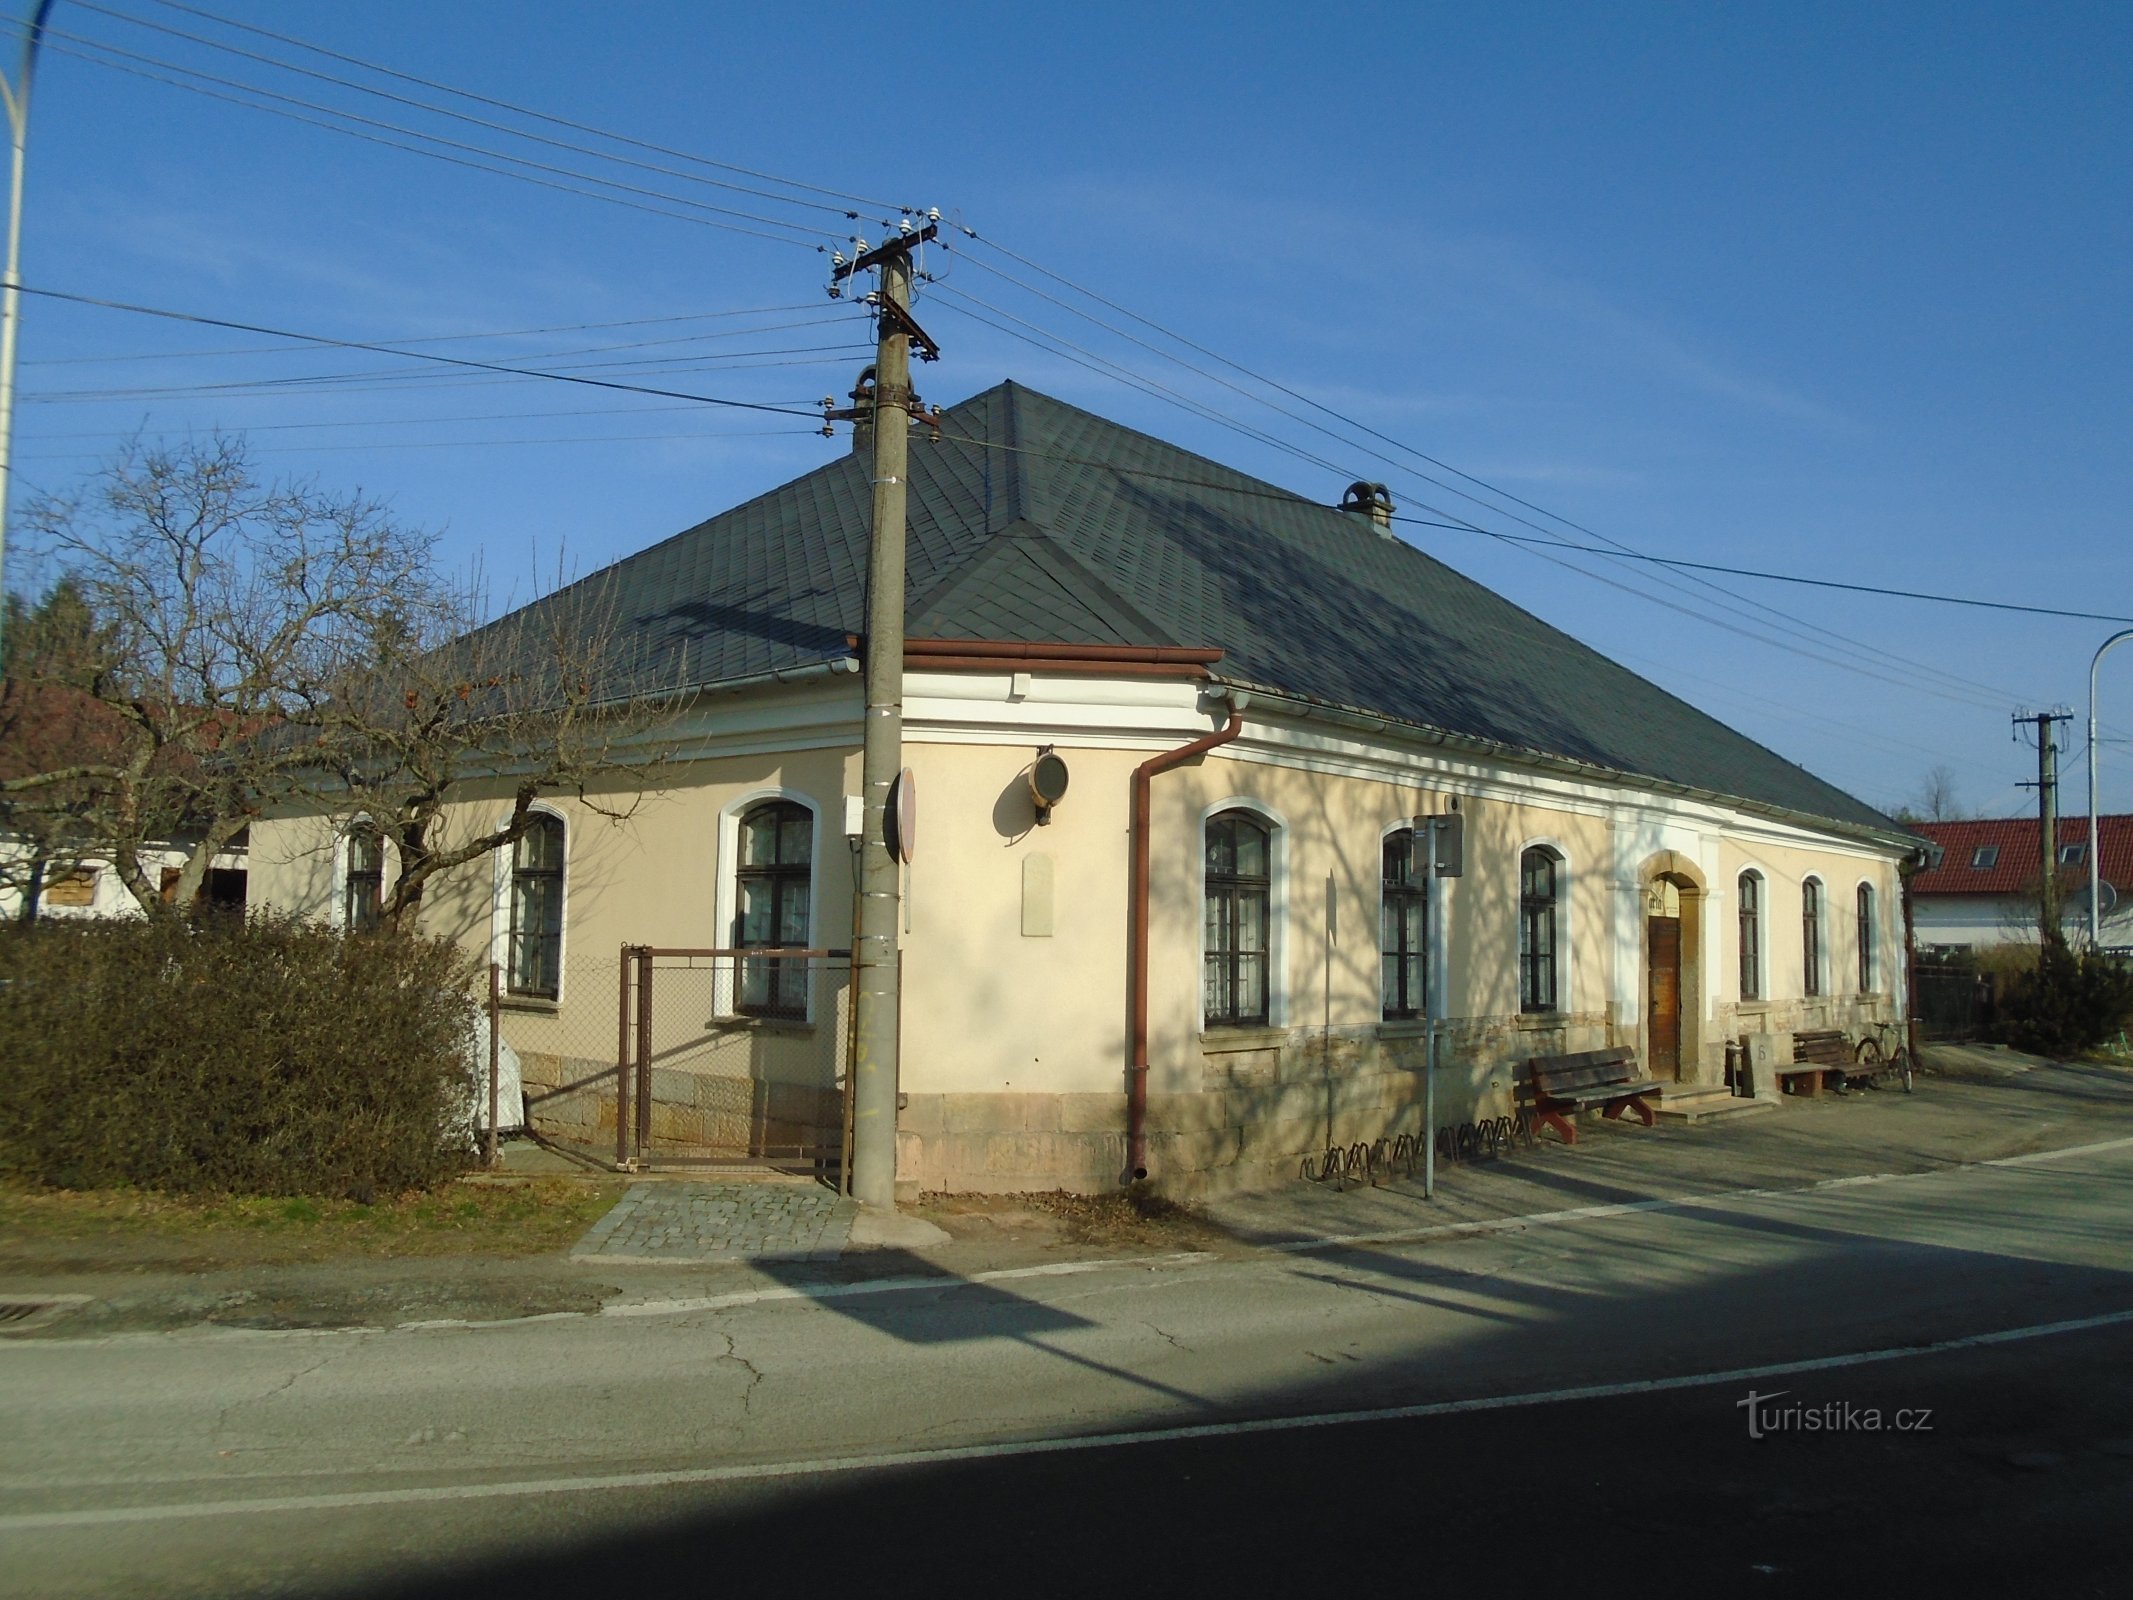 Podhůrská No. 76 (Hradec Králové, 23.1.2019. tammikuuta XNUMX)